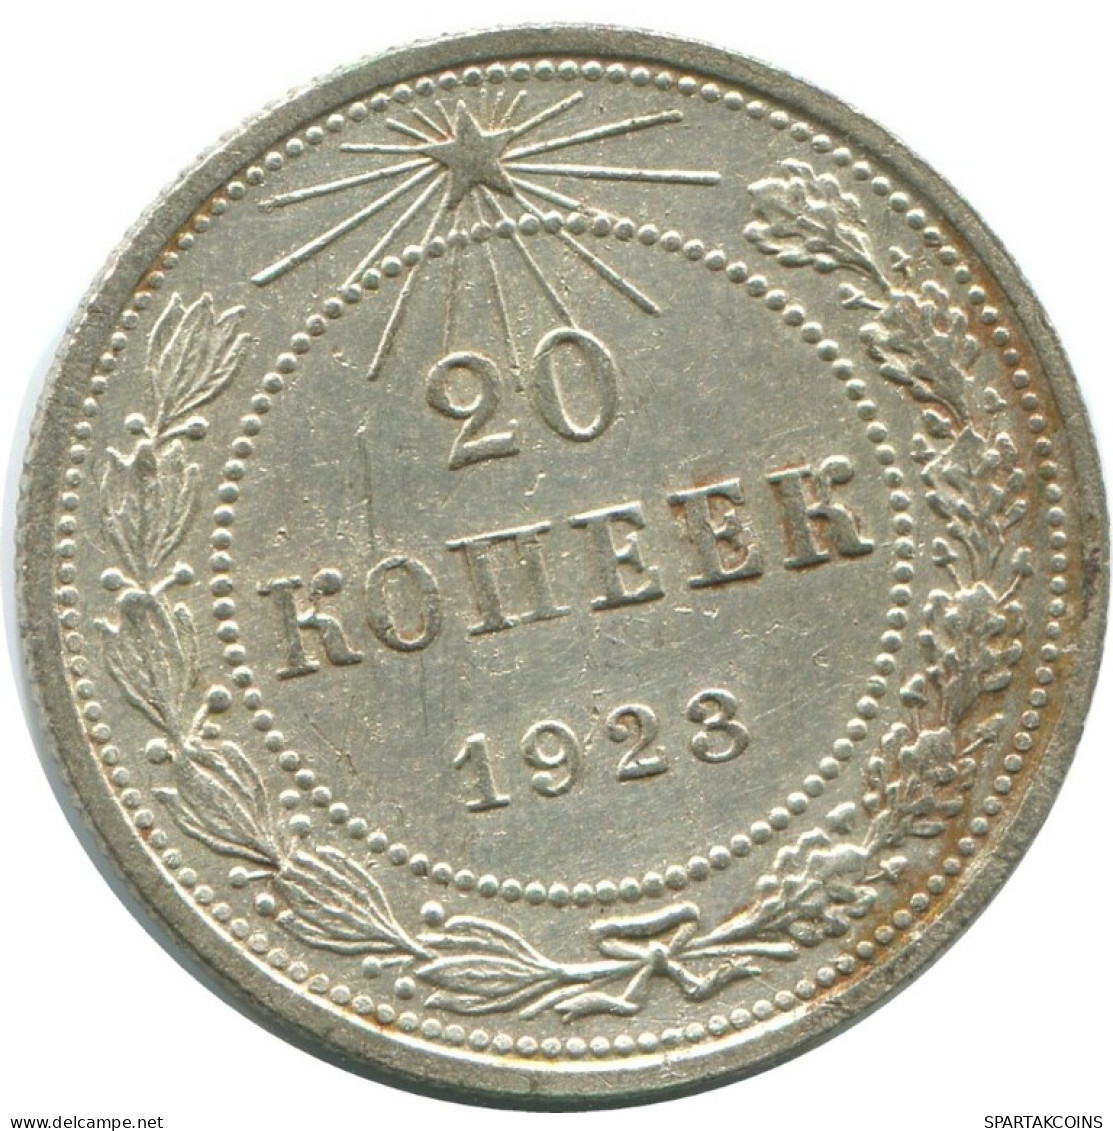 20 KOPEKS 1923 RUSSLAND RUSSIA RSFSR SILBER Münze HIGH GRADE #AF632.D.A - Russia